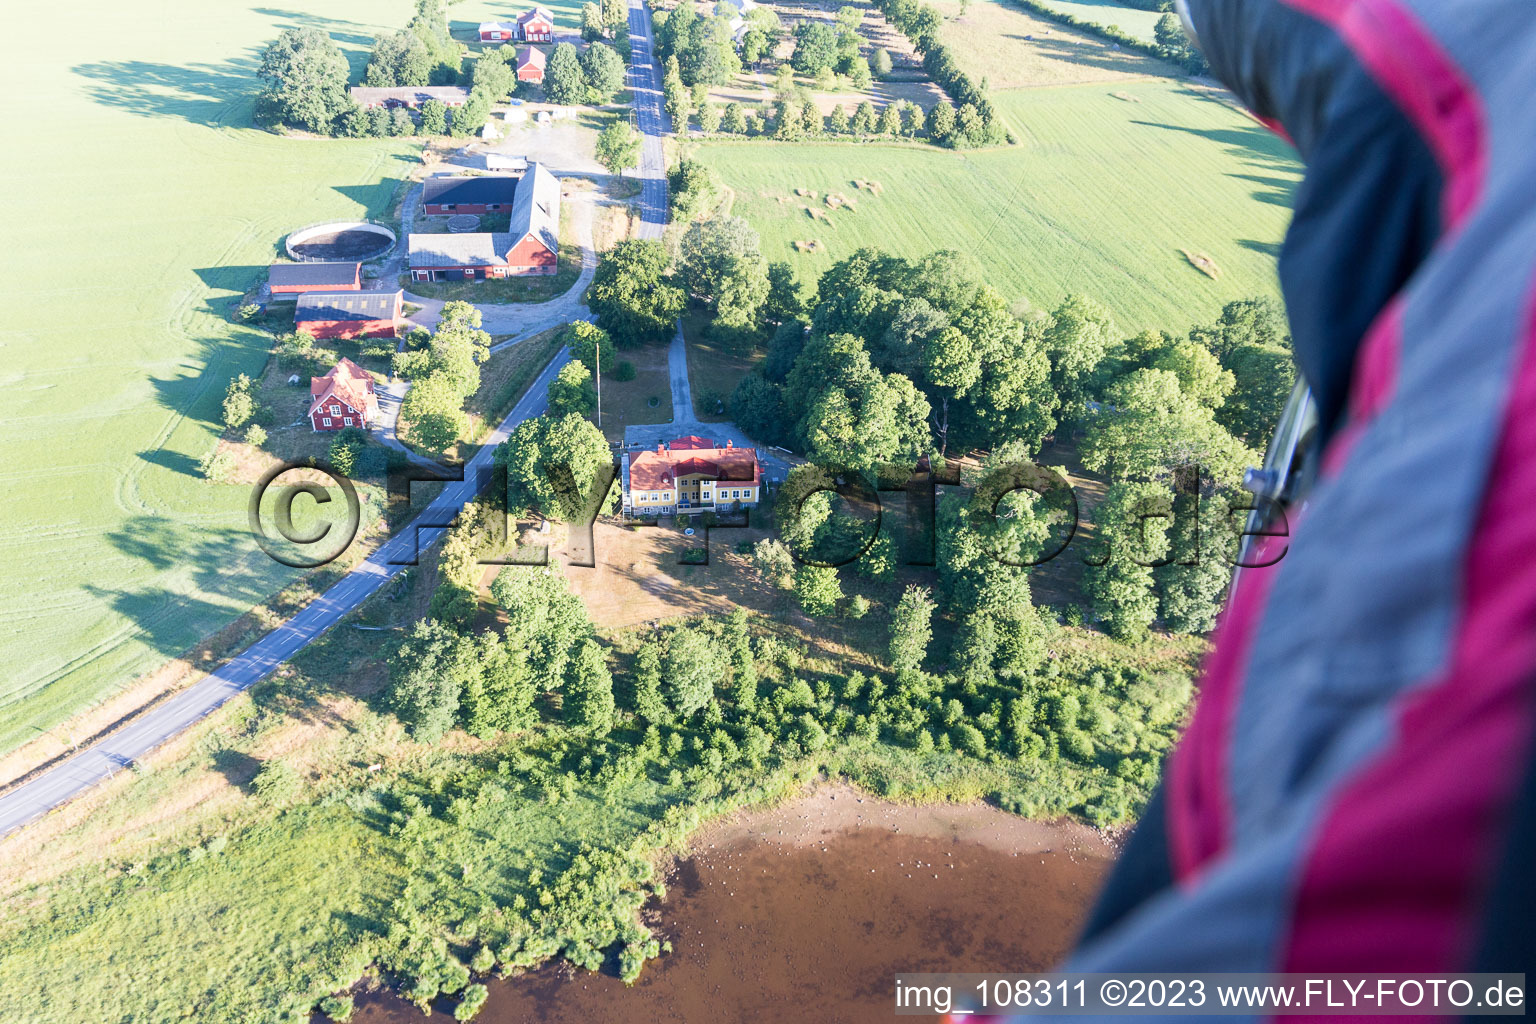 Drone image of Skatelöv in the state Kronoberg, Sweden